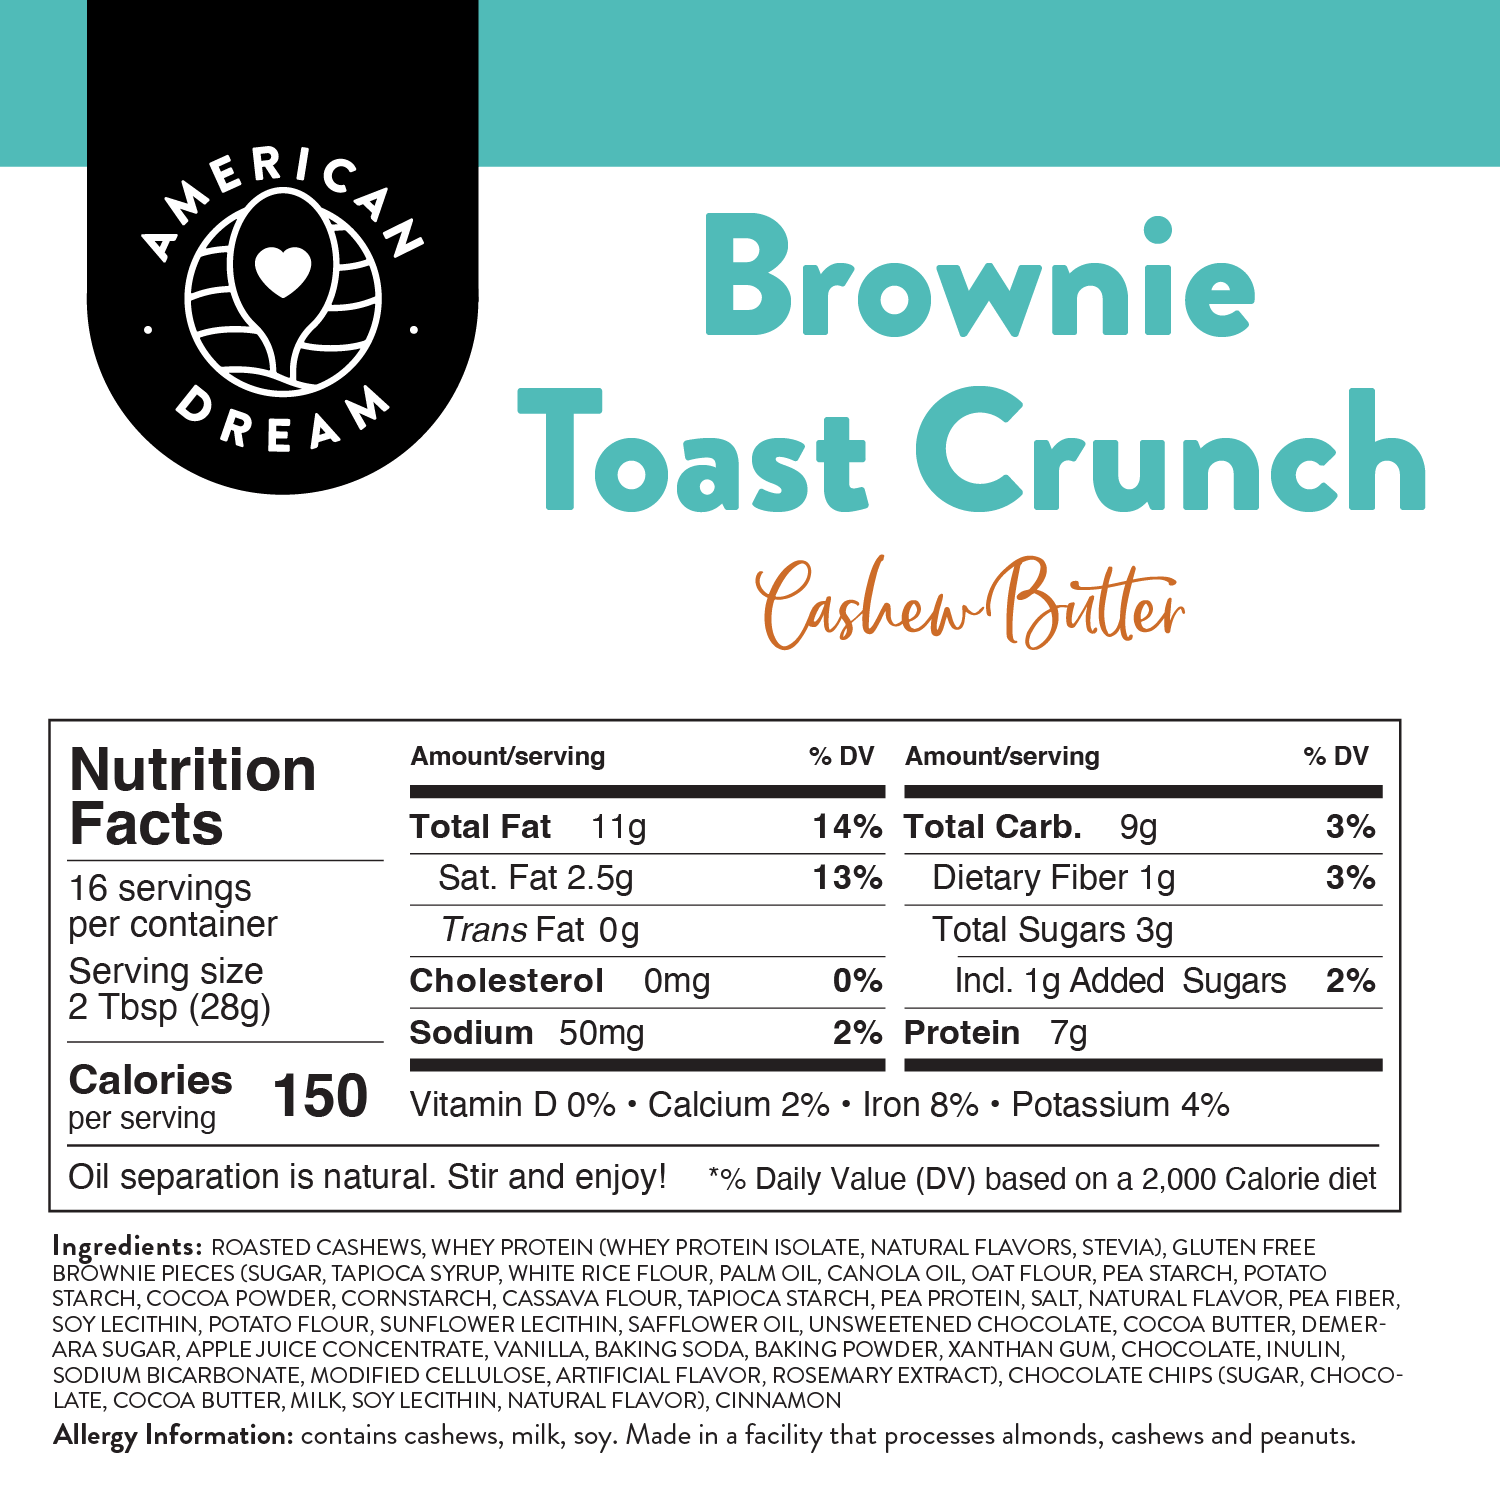 Gluten-Free Brownie Toast Crunch Cashew Butter